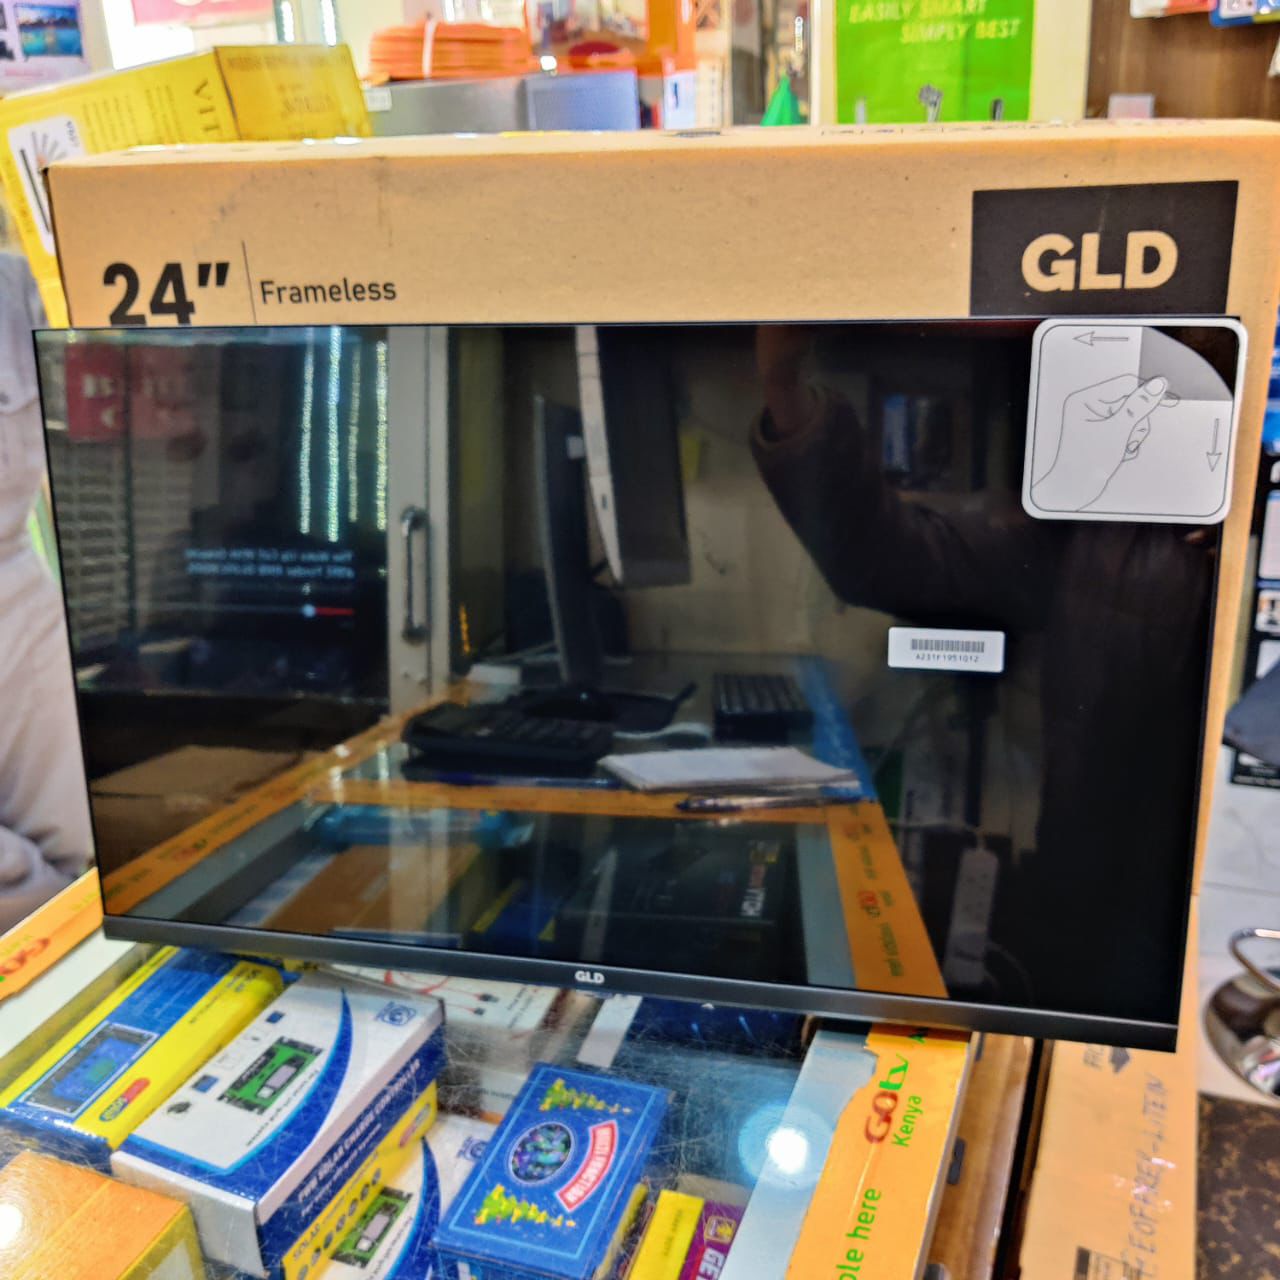 Gld 24inch frameless digital LED TV